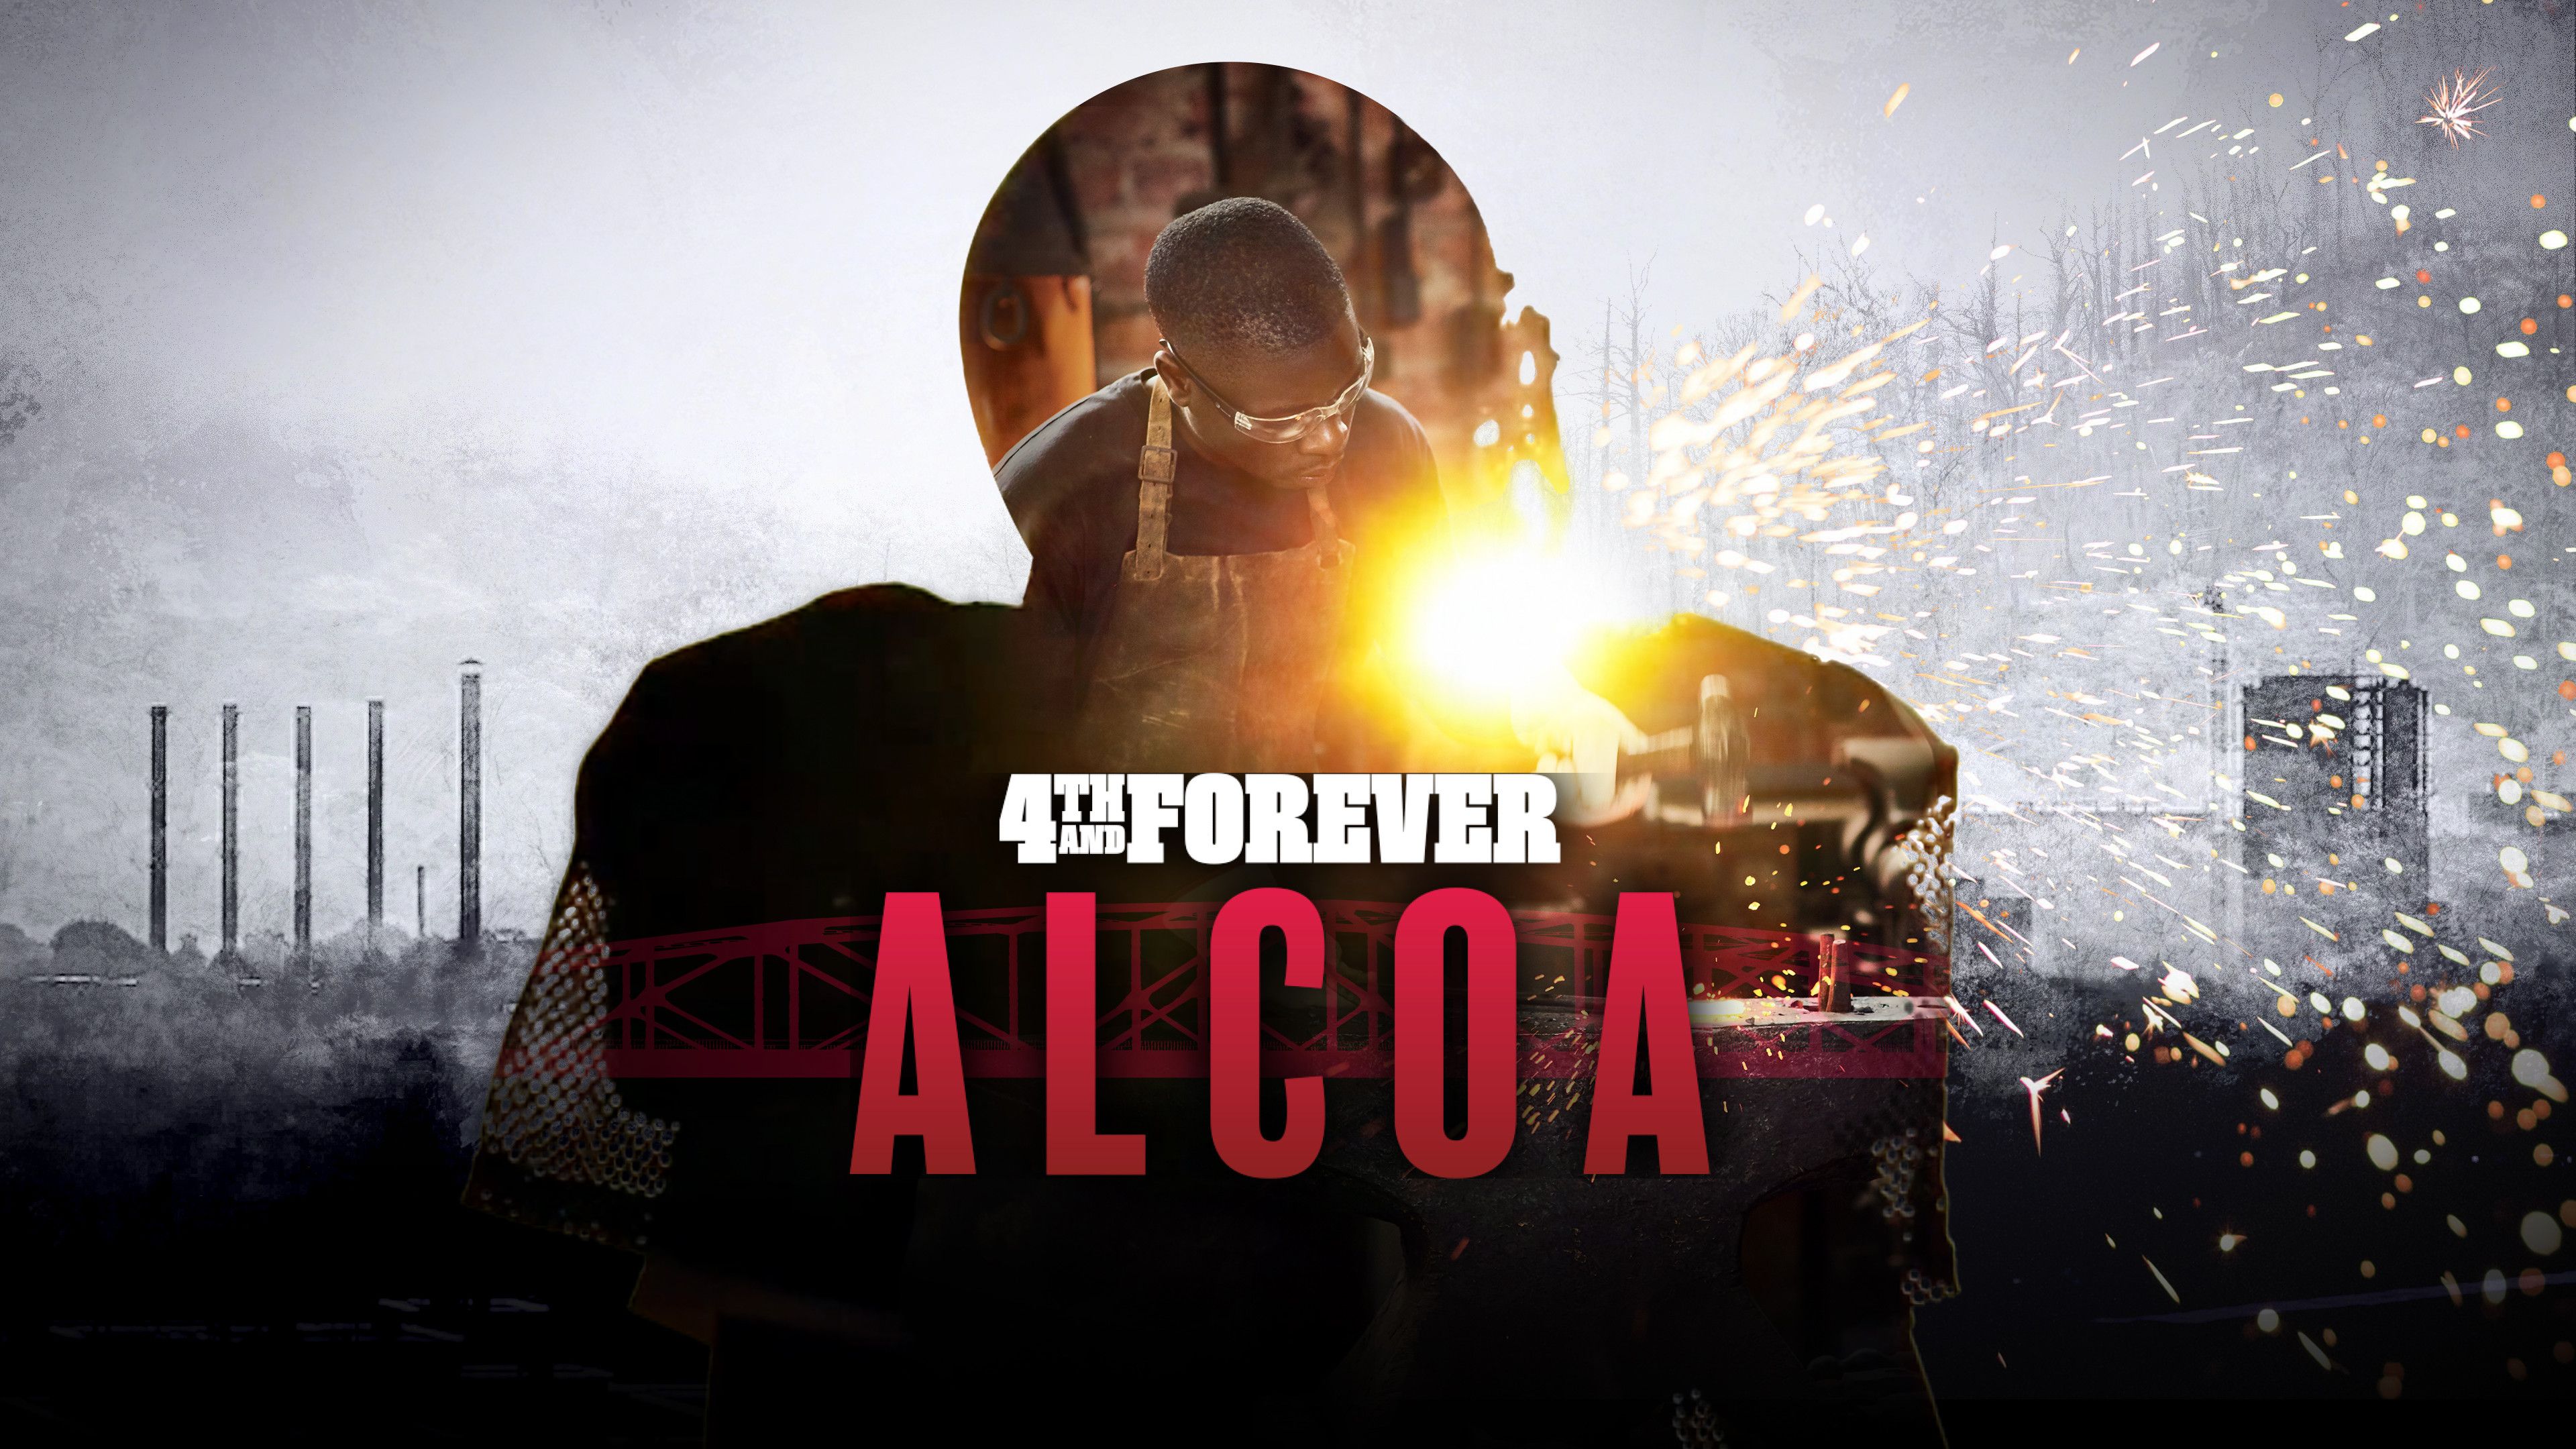 4th & Forever: Alcoa